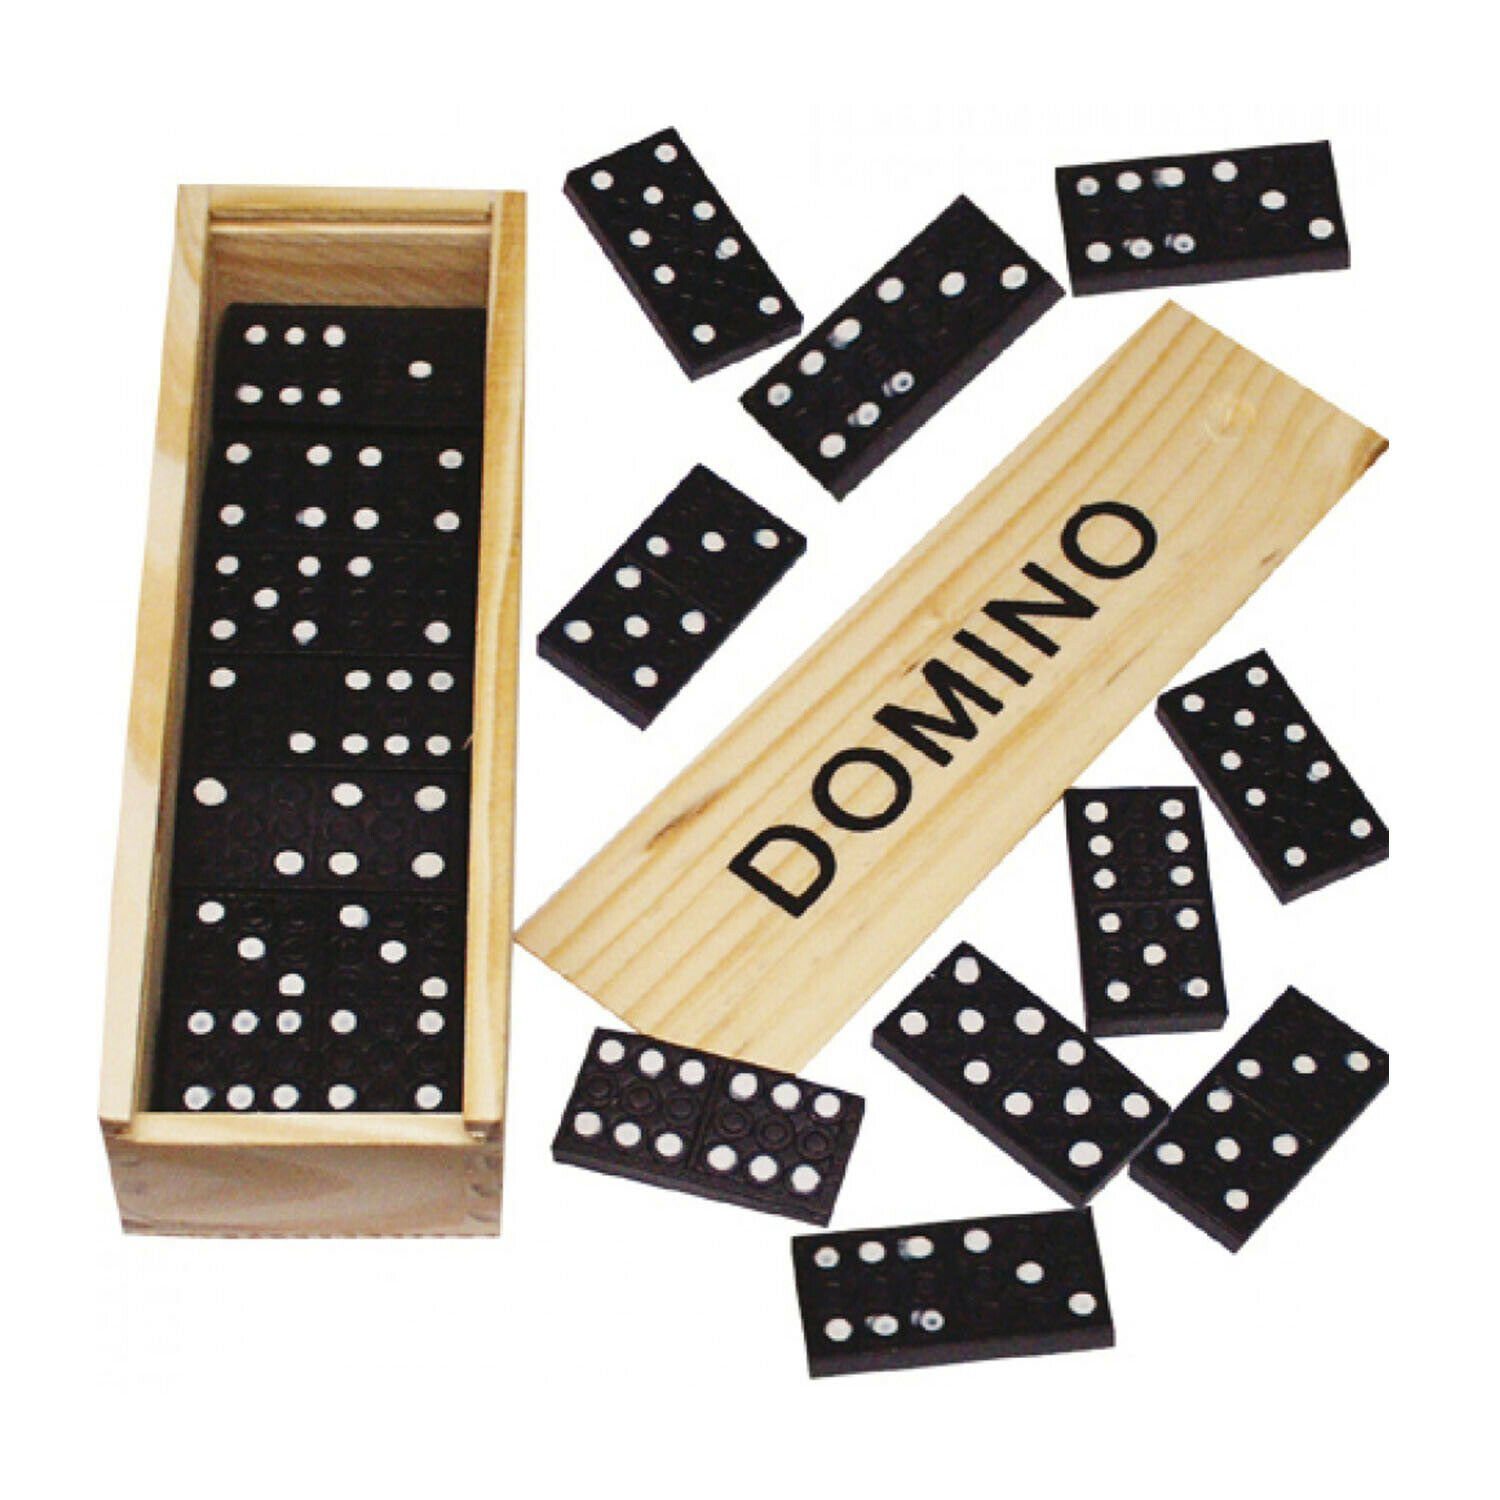 Dominospiel in Holzbox 28 Steine 